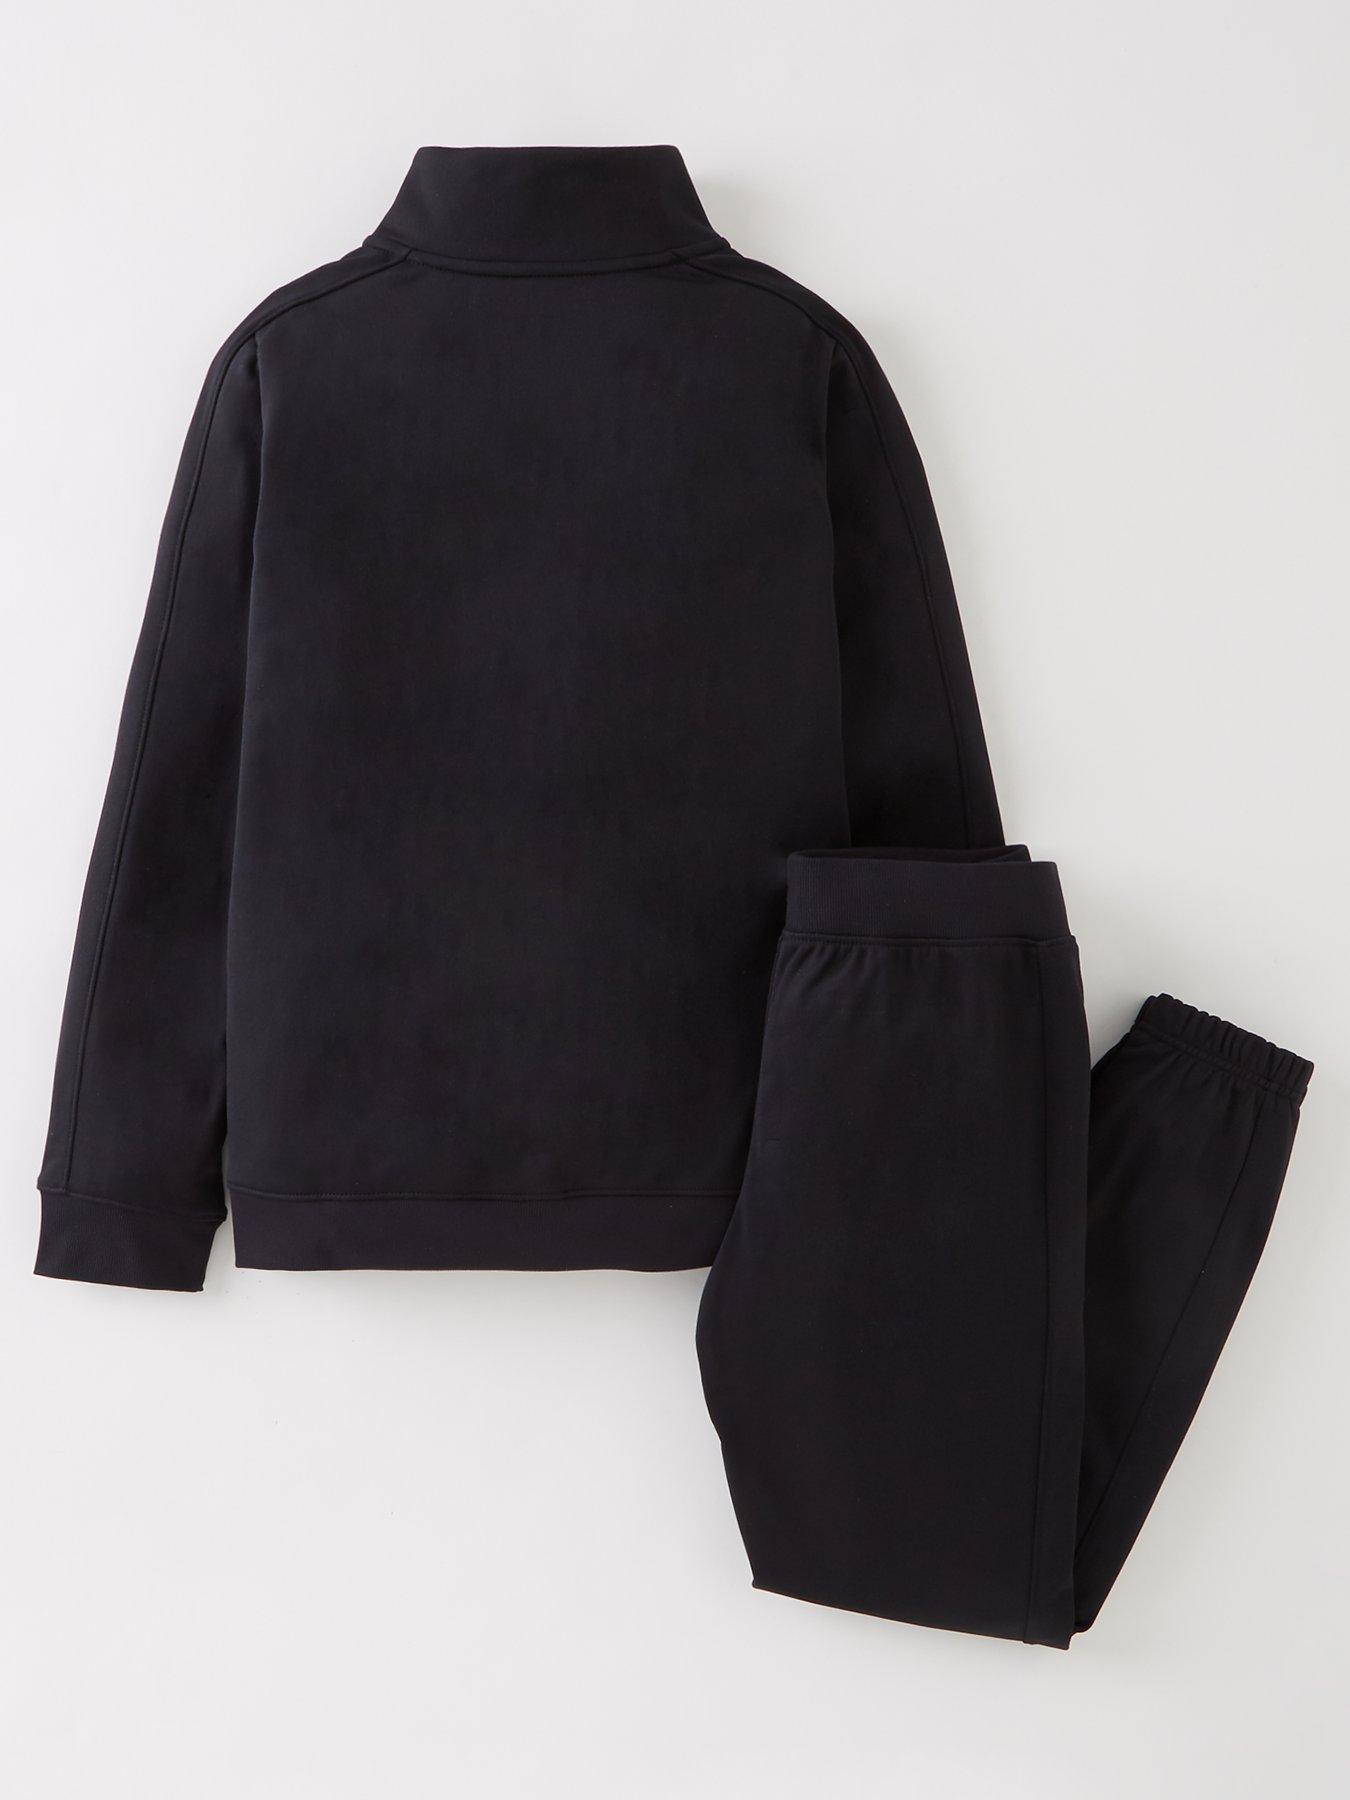 UNDER ARMOUR Boys Knit Track Suit - Black